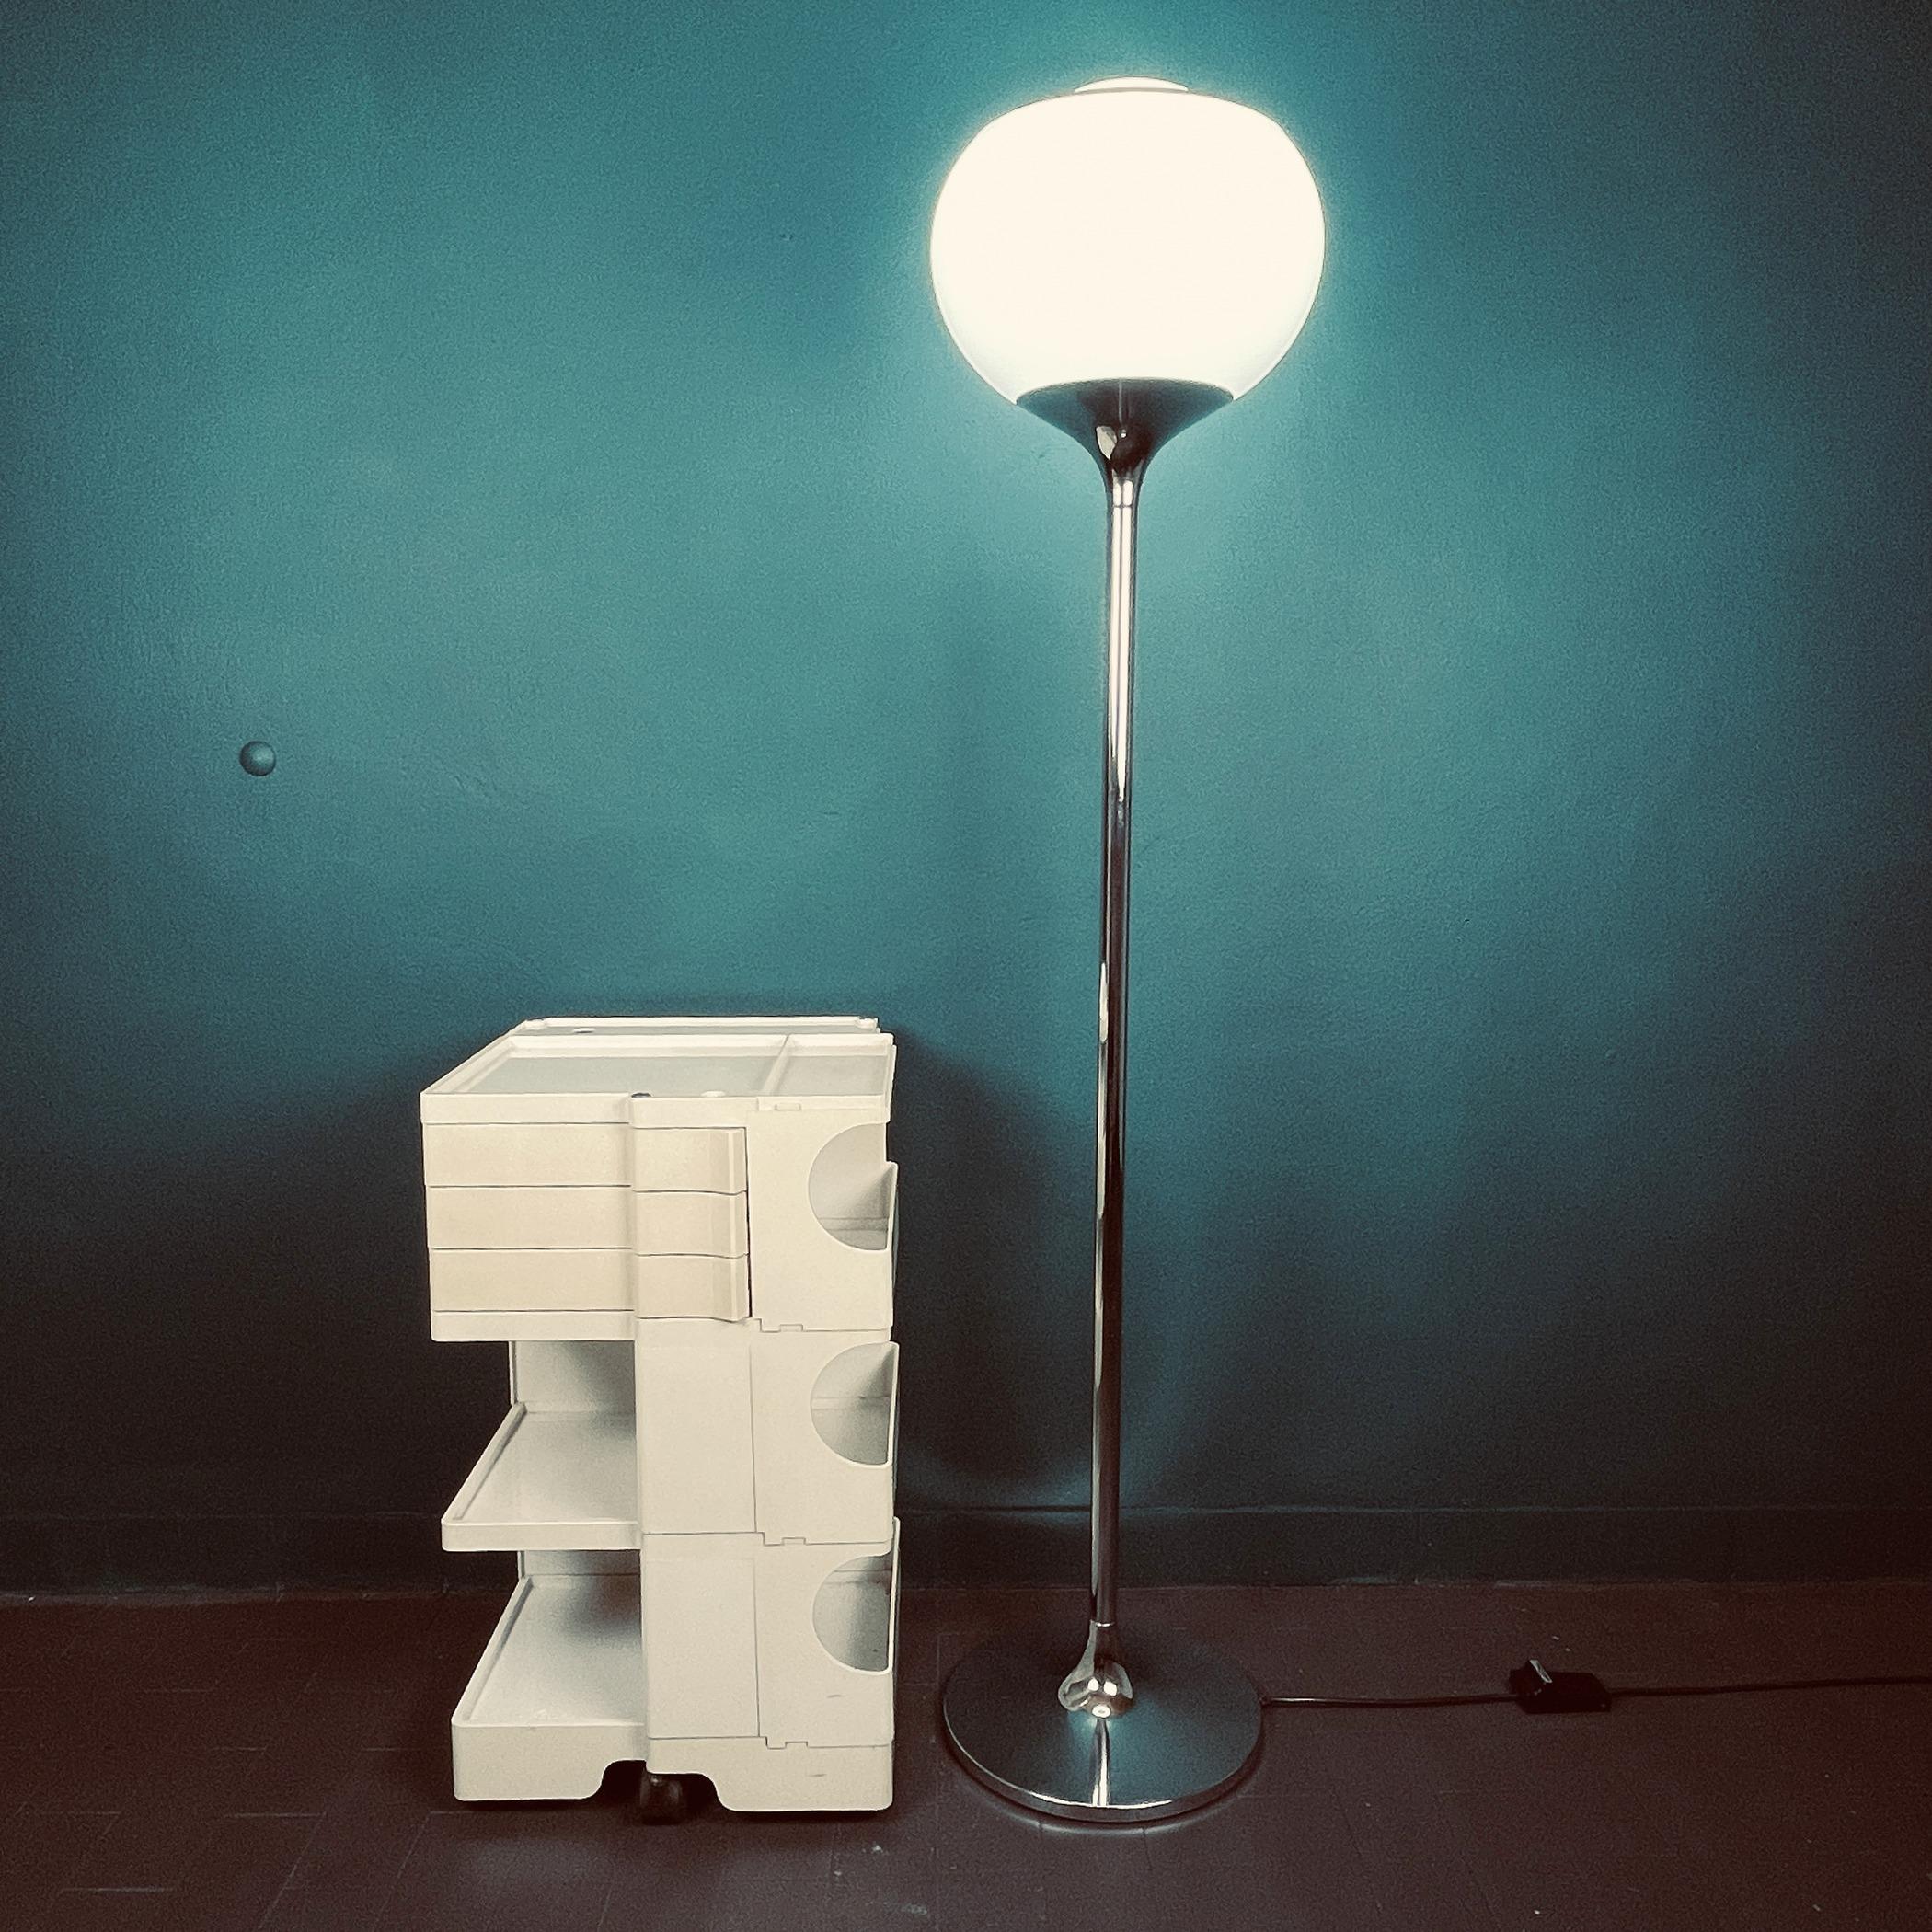 Un fabuleux lampadaire en chrome brillant et en plastique blanc laiteux. Ce lampadaire standard chromé a été conçu par Harvey Guzzini pour Meblo dans les années 1960 et diffuse une lumière douce et diffuse typique de Guzzini. Ce lampadaire 